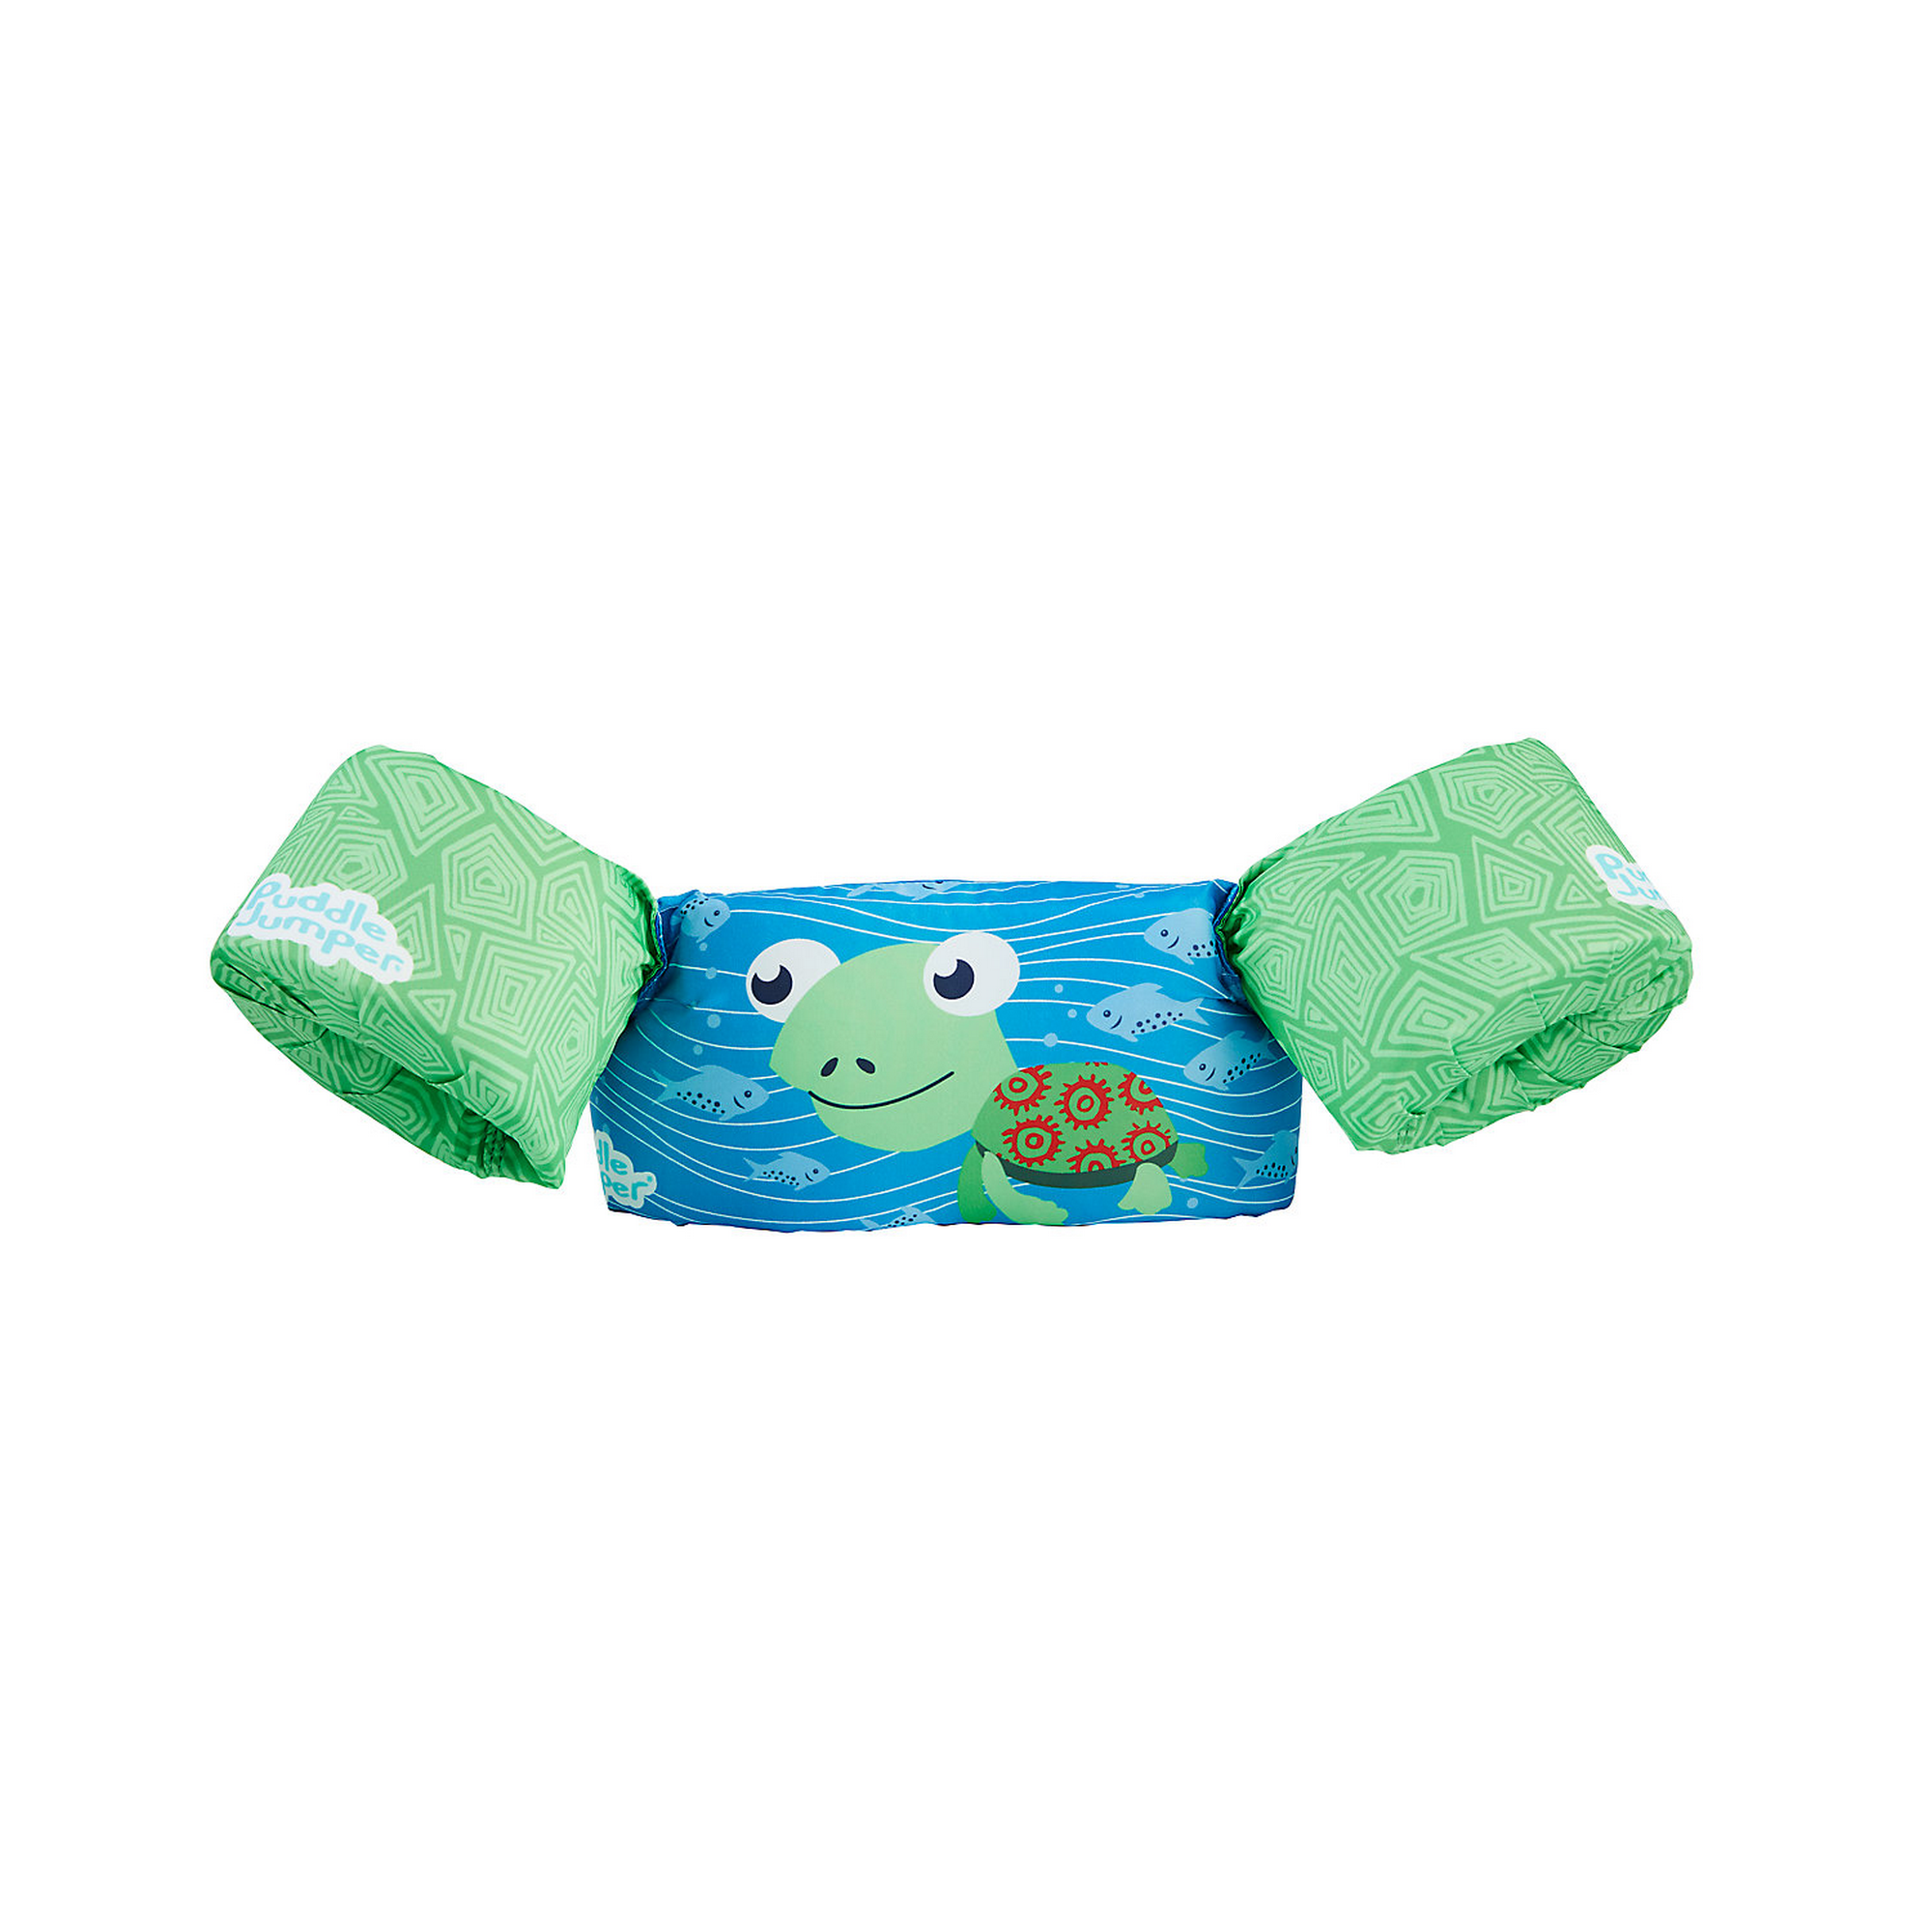 Schwimmhilfe Puddle Jumper™ Deluxe Schildkröte blau/grün + product picture